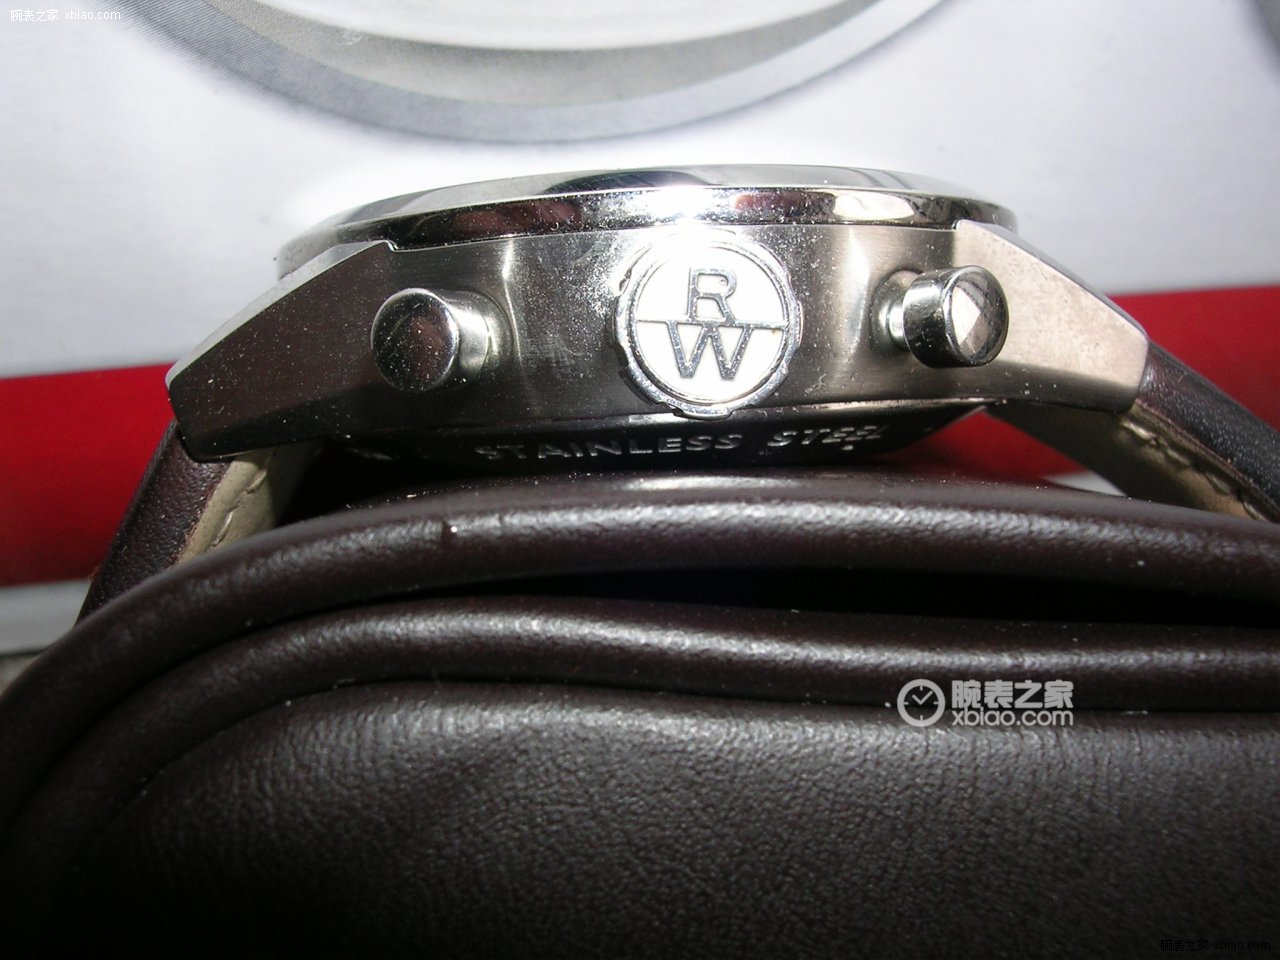 蕾蒙威男装腕表系列7730-STC-20101